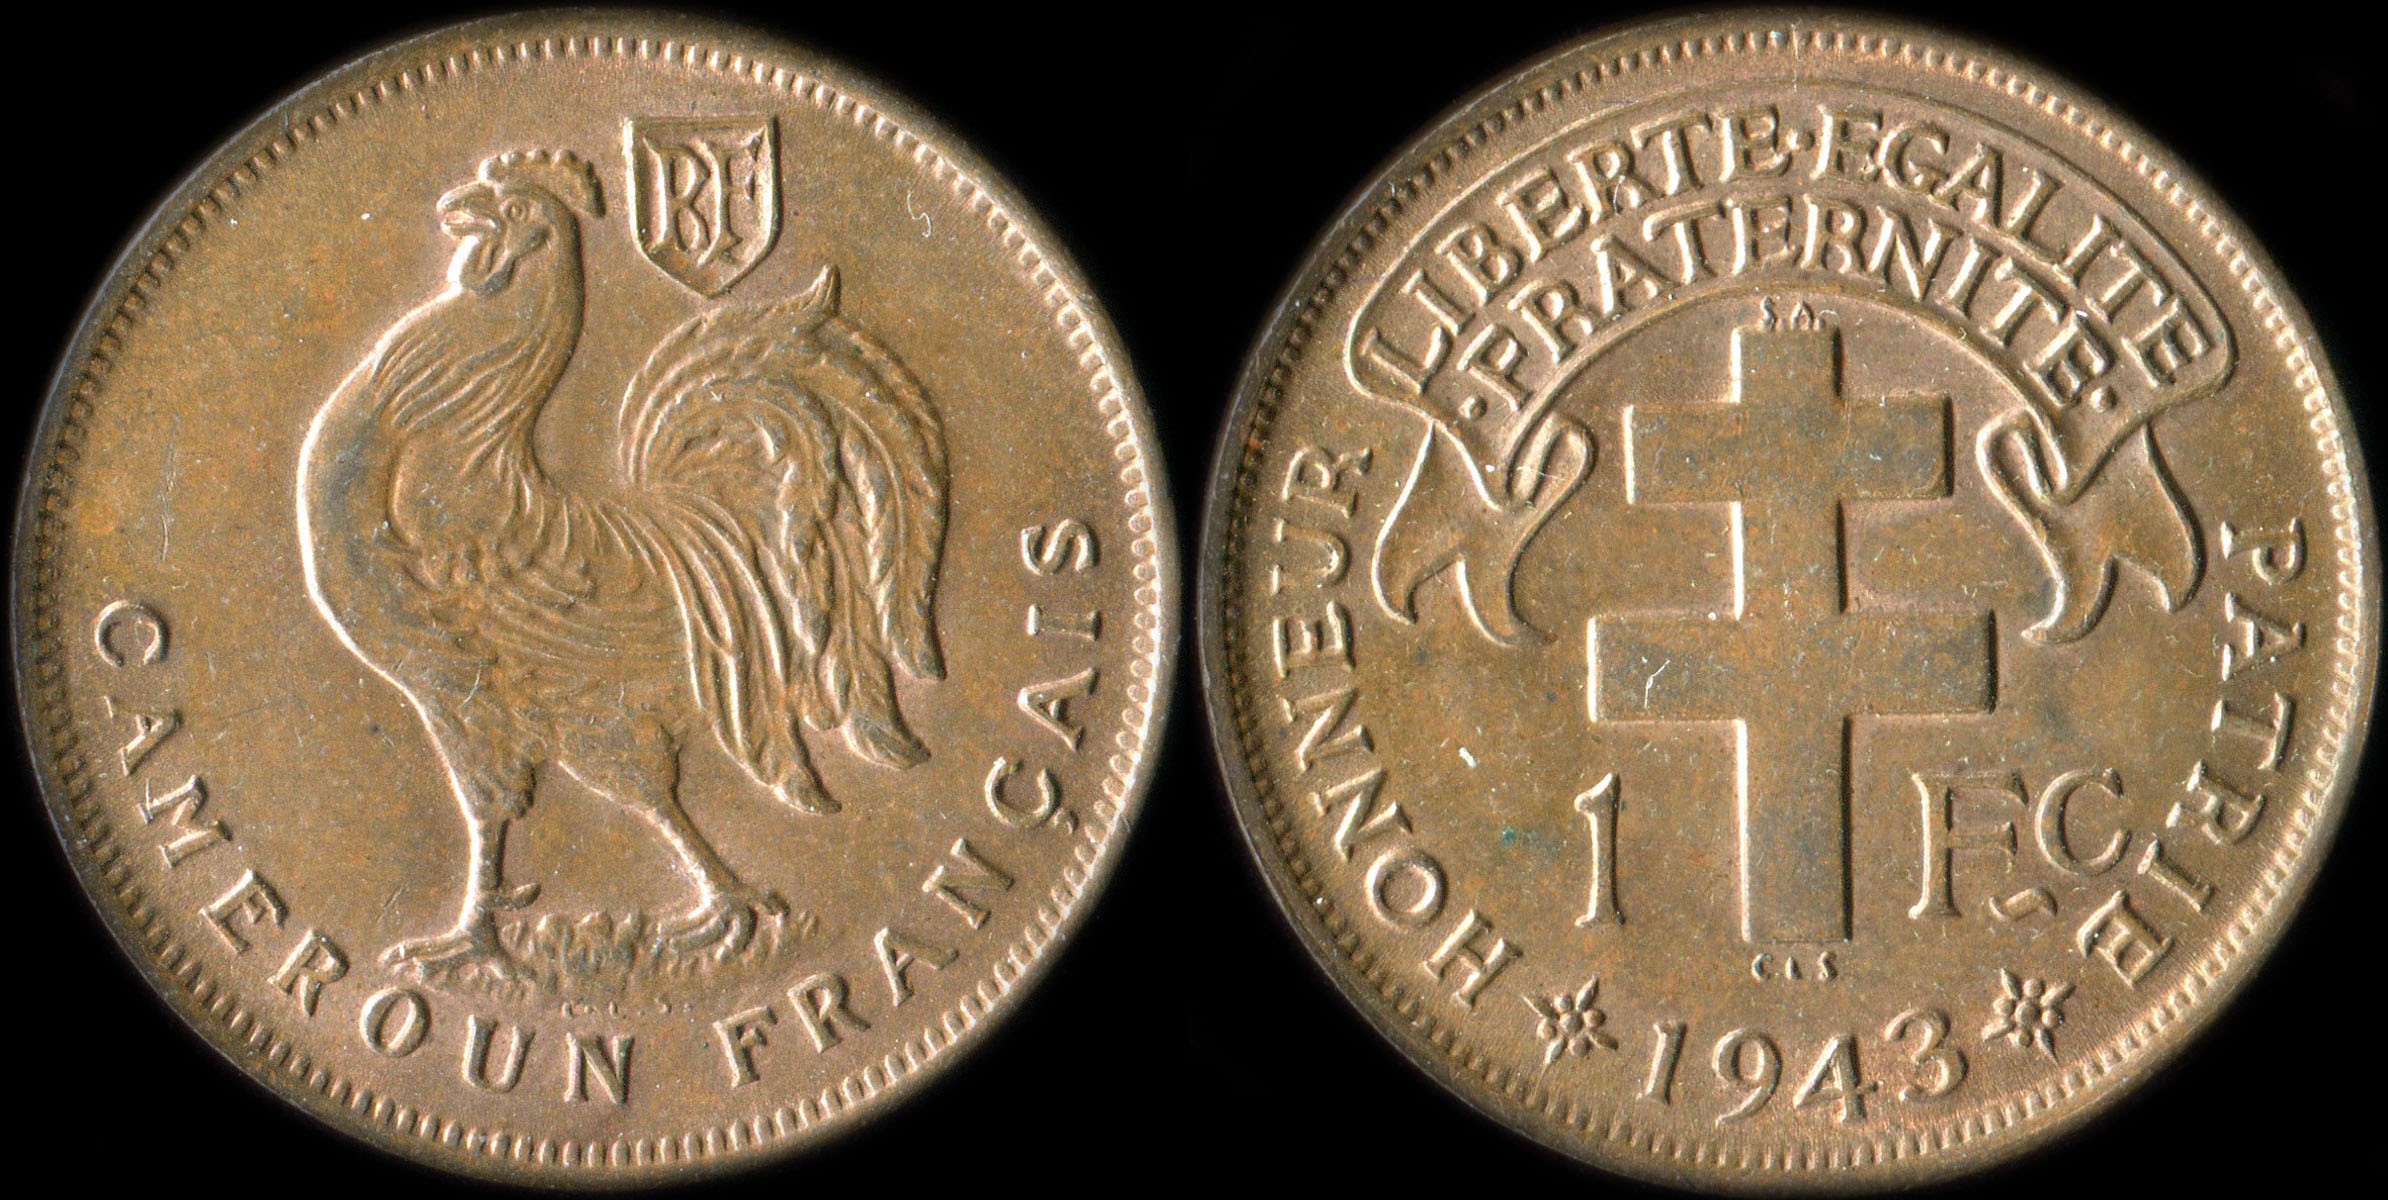 Pice de 1 franc 1943 Cameroun Franais